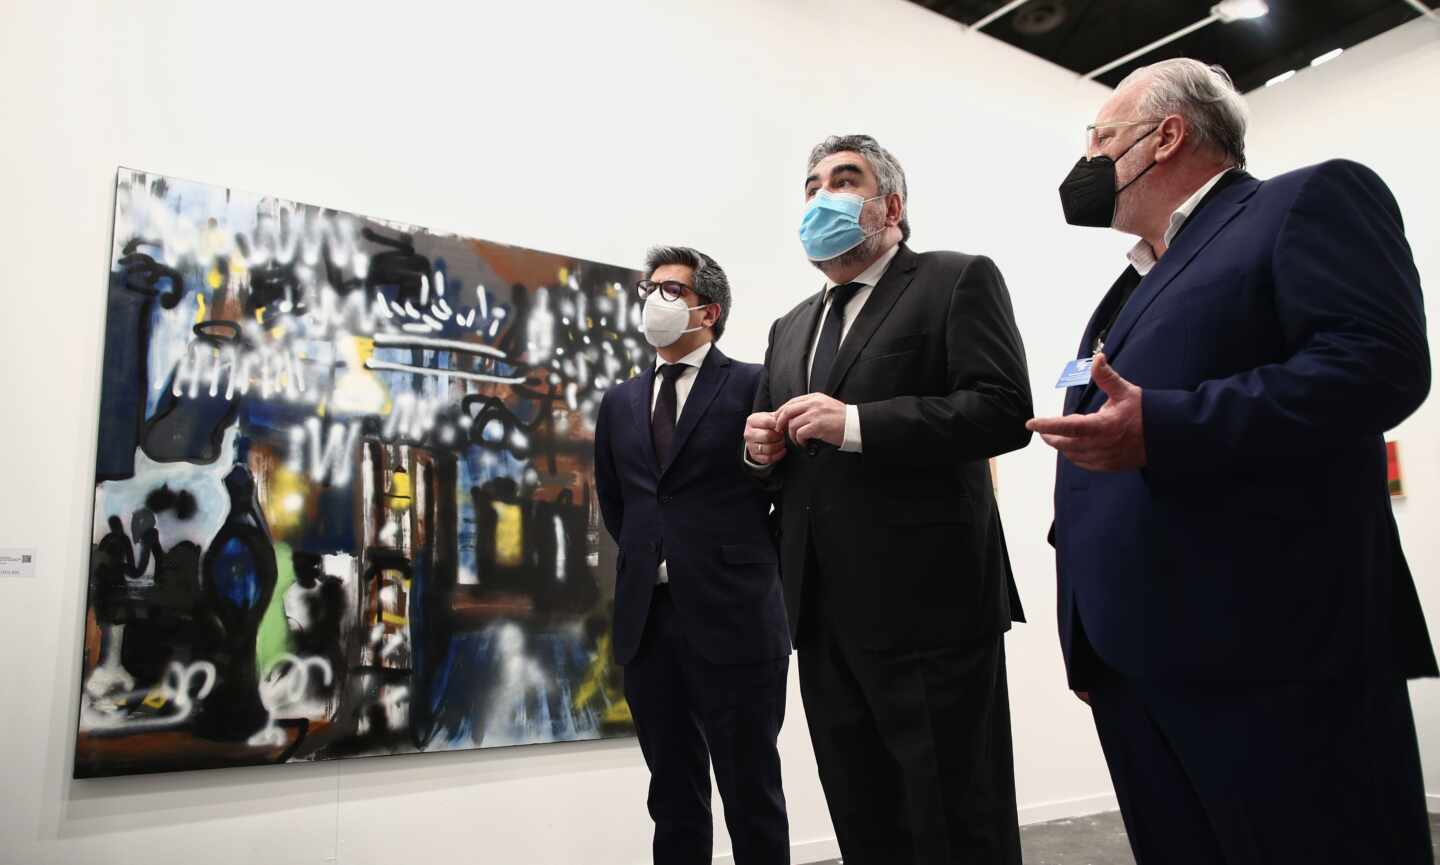 Cultura para la subasta de un cuadro por 1.500 euros porque "podría ser un Caravaggio"